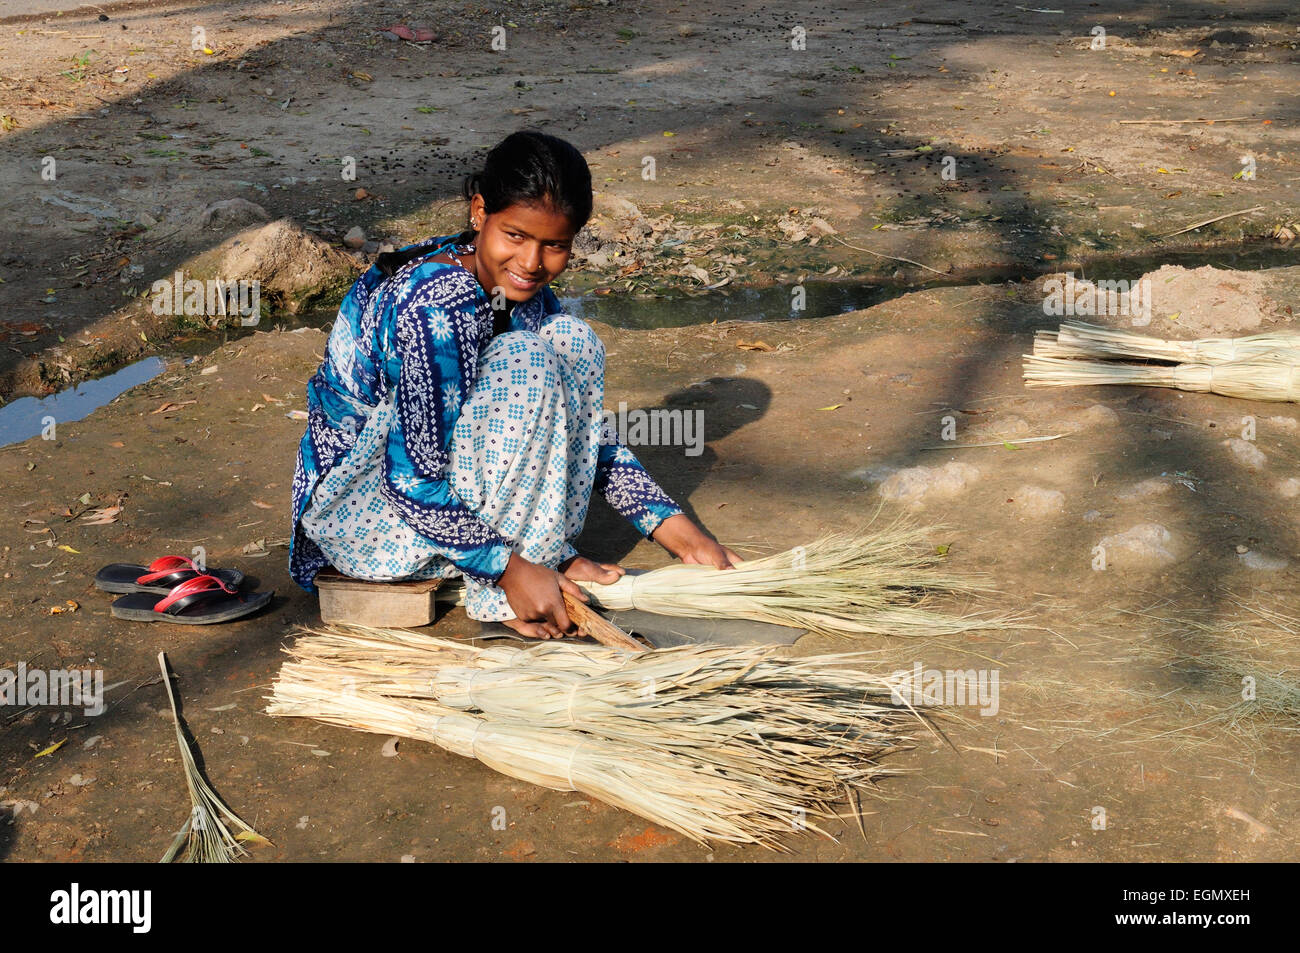 Femme indienne assise sur le sol en herbe traditionnelles brosses reed Rajasthan Inde Banque D'Images